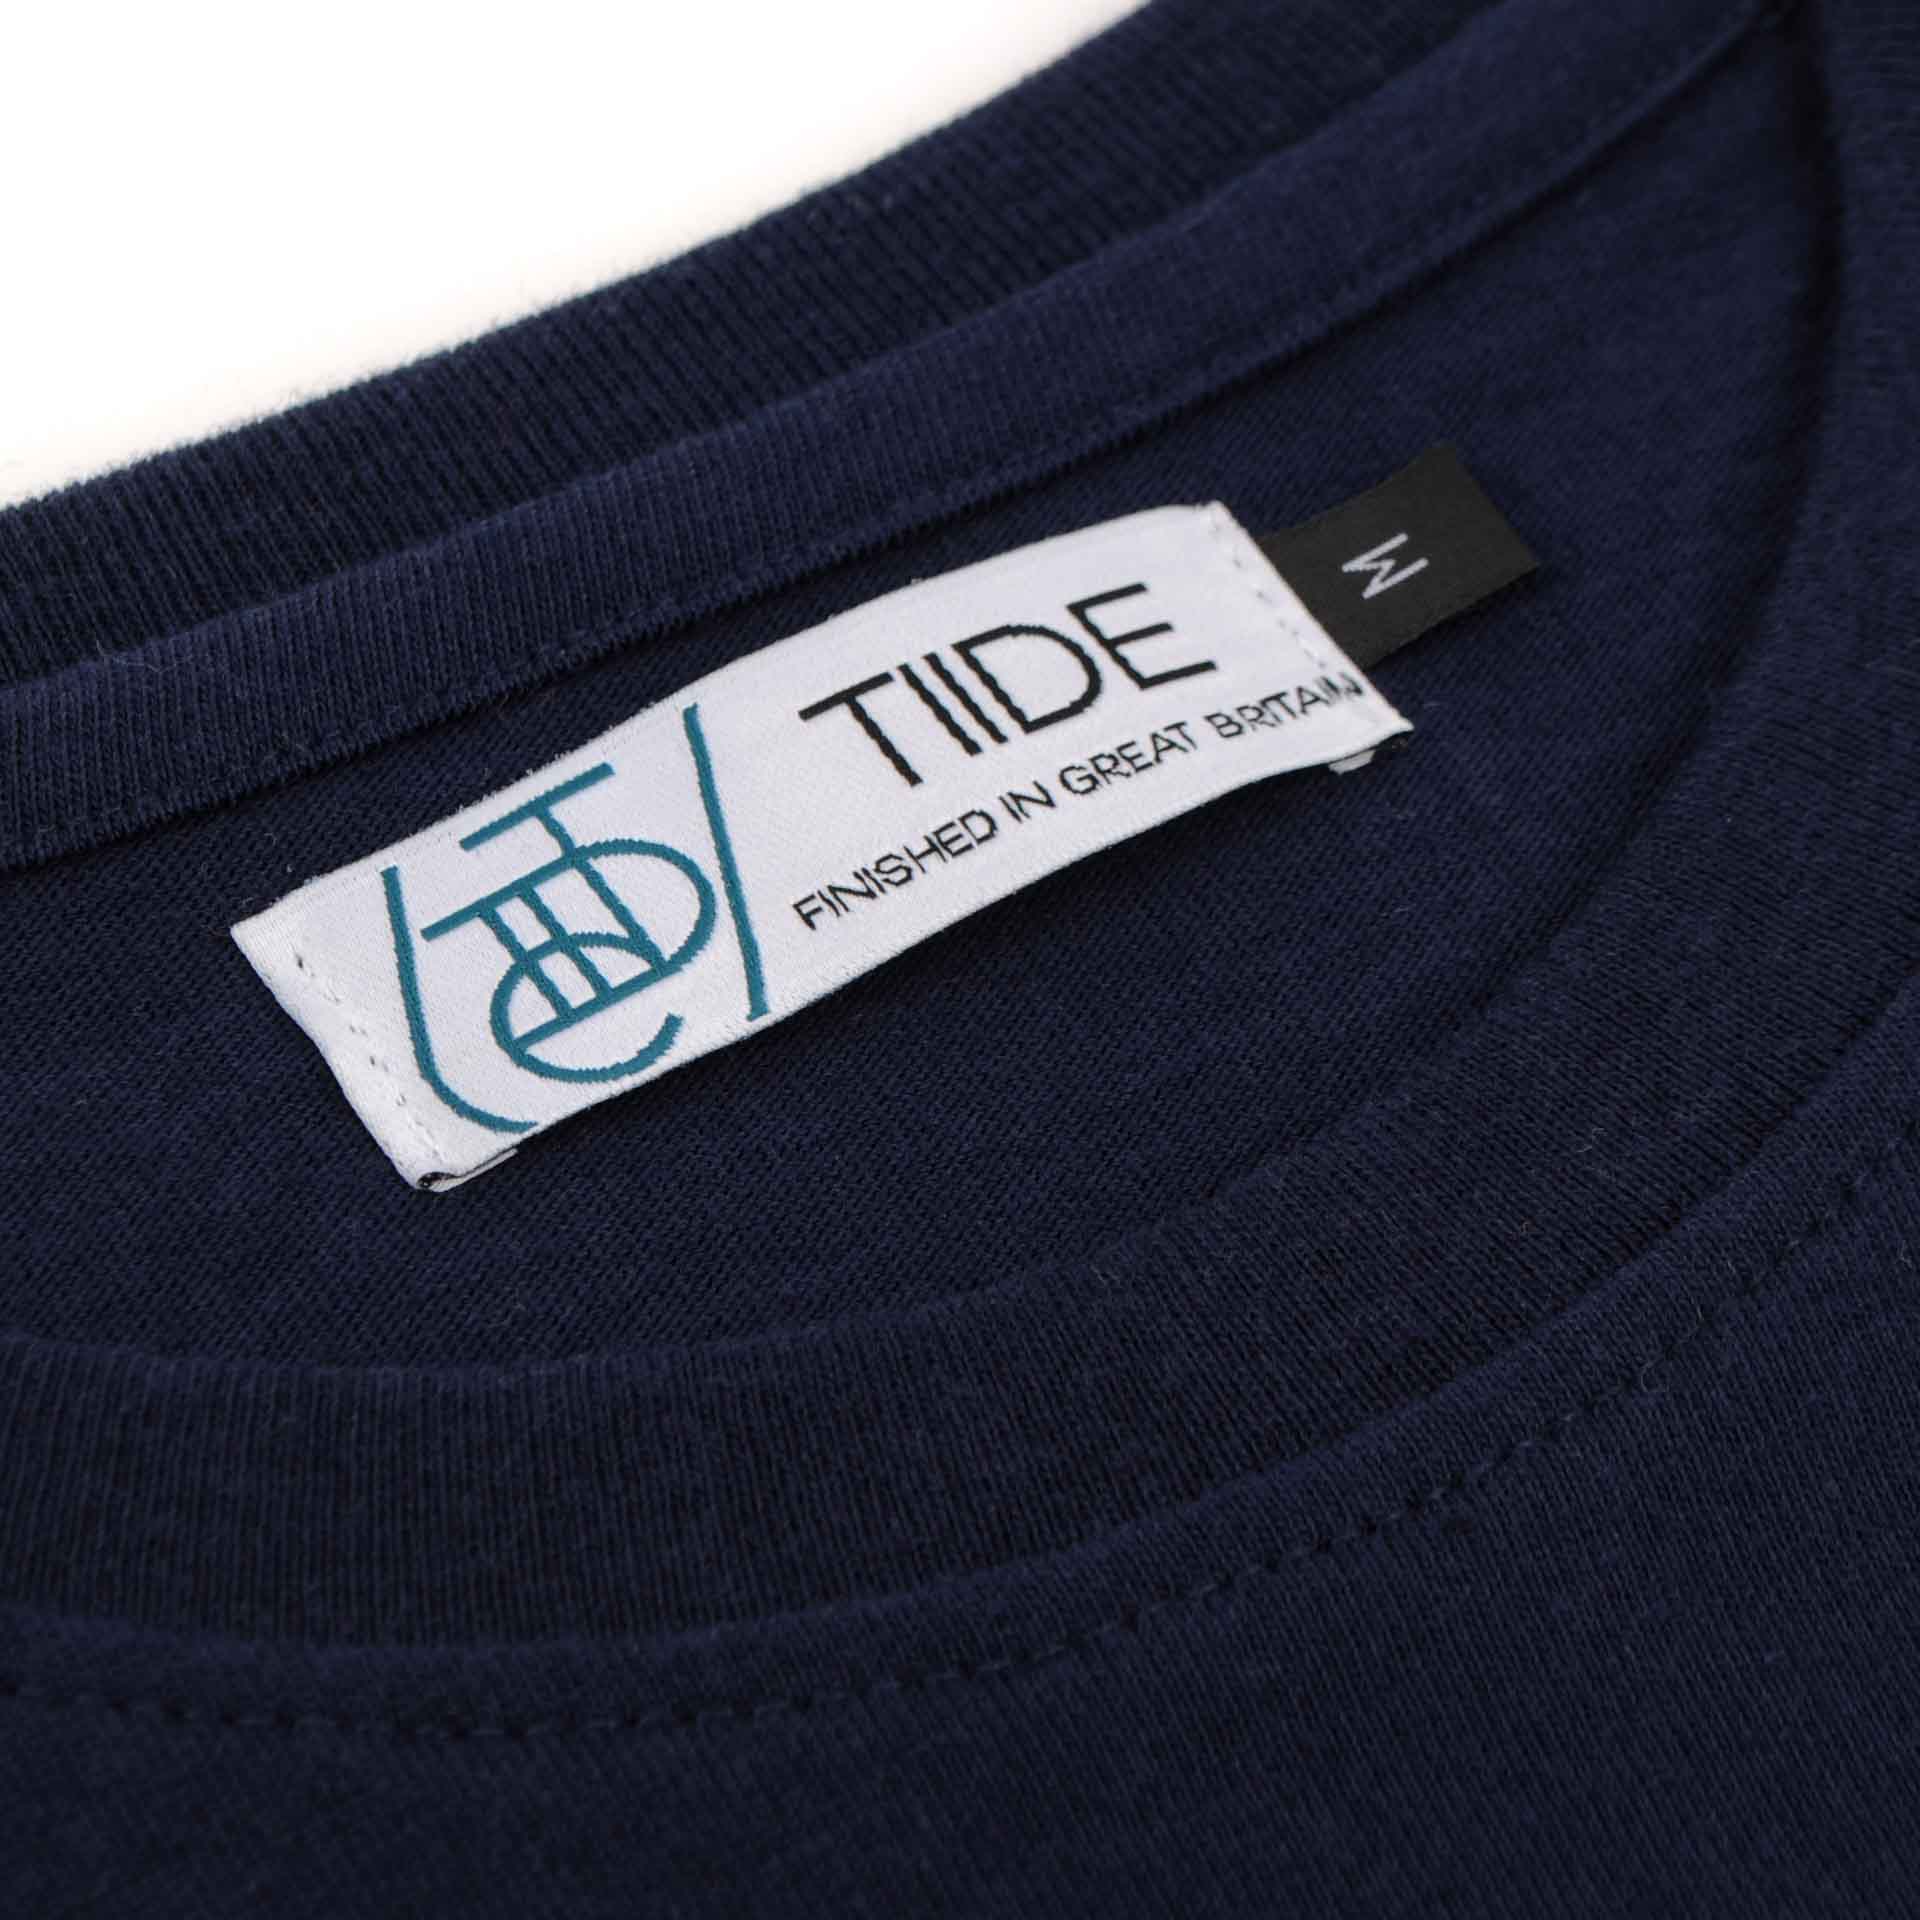 Tiide Script T-Shirt Navy Blue - Tiide Swim